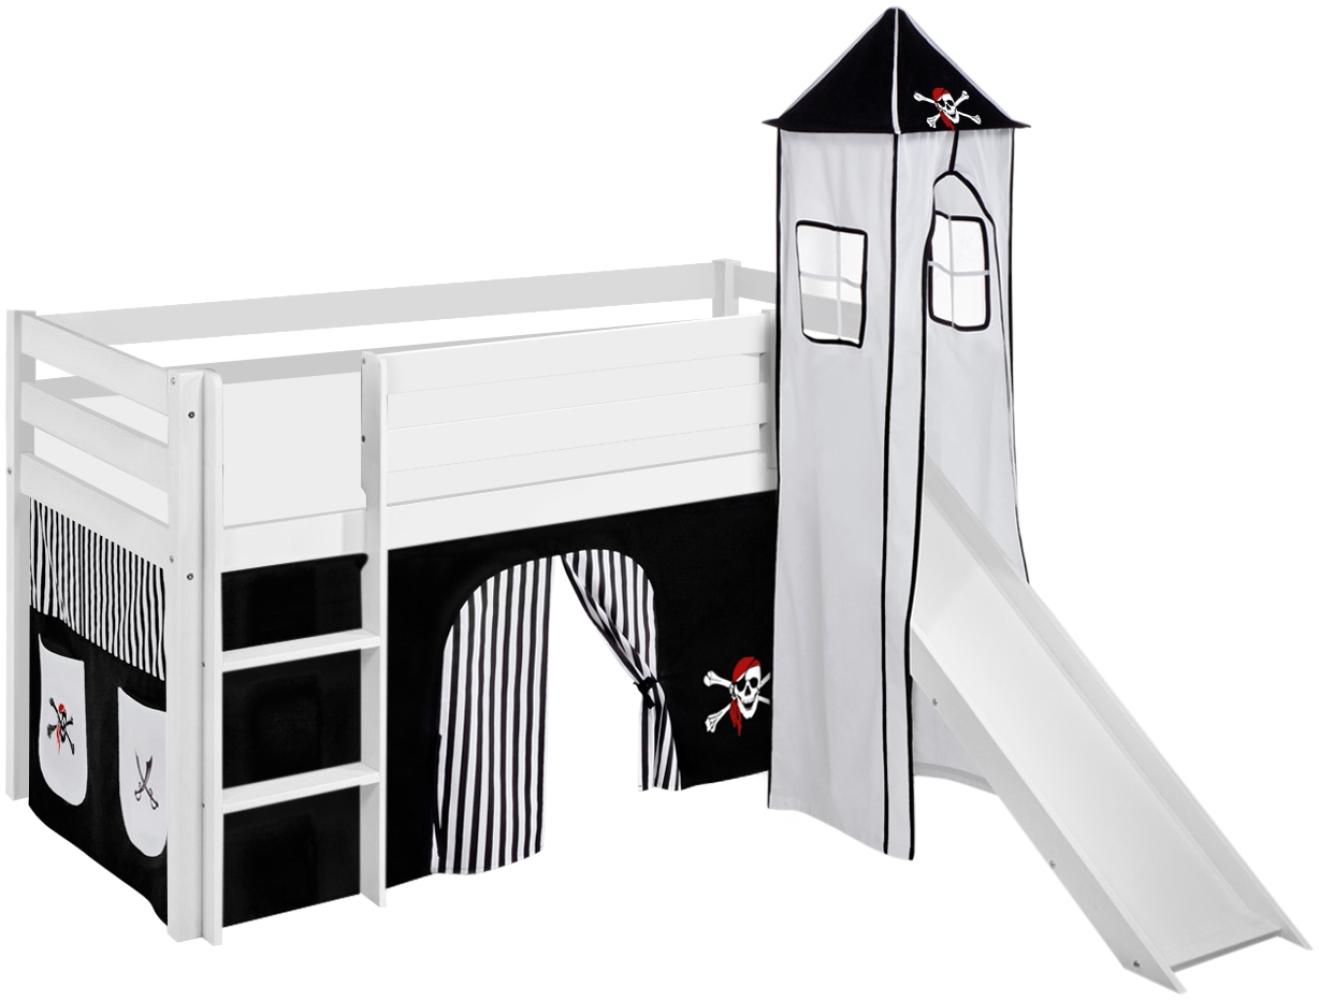 Lilokids 'Jelle' Spielbett 90 x 190 cm, Pirat Schwarz Weiß, Kiefer massiv, mit Turm, Rutsche und Vorhang Bild 1